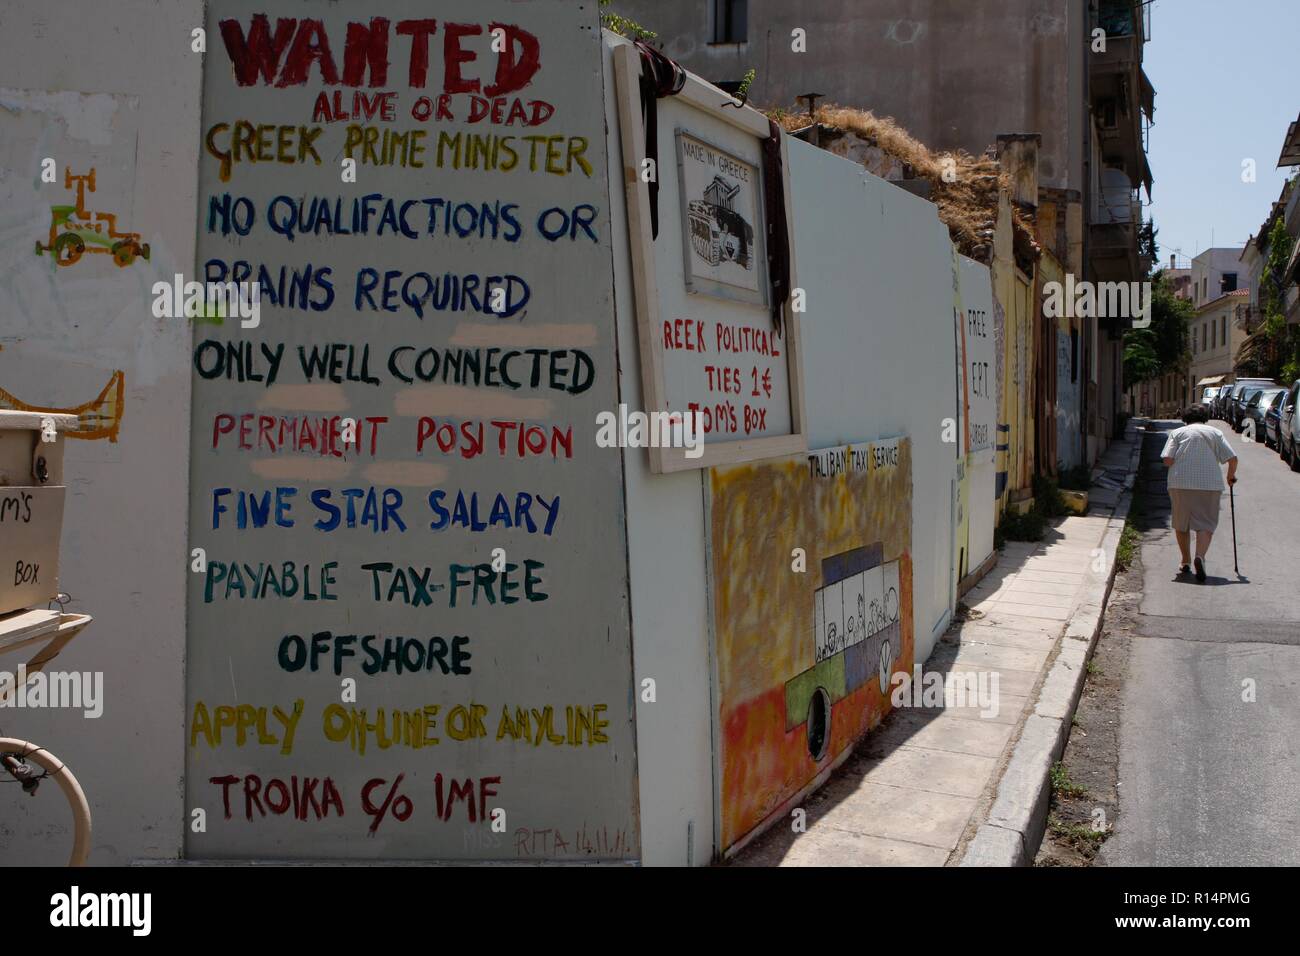 La crise économique grecque inspire les artistes graffiti qui expriment leurs pensées sur le mur d'Athènes. Banque D'Images